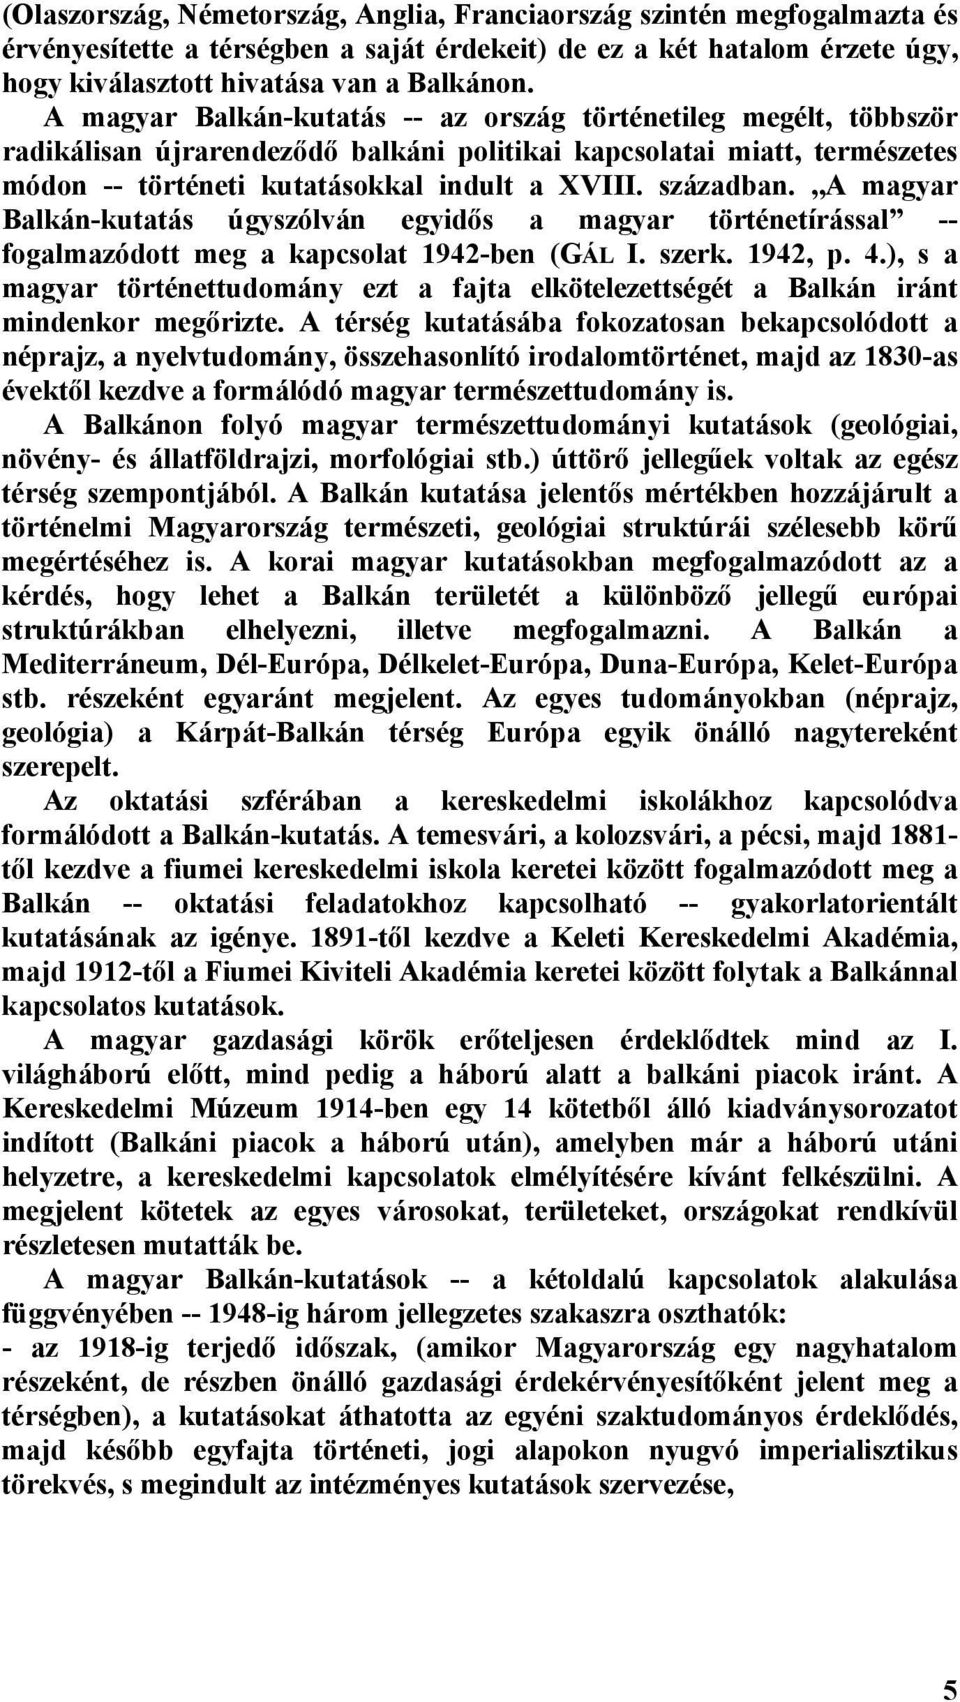 ,,a magyar Balkán-kutatás úgyszólván egyidős a magyar történetírással -- fogalmazódott meg a kapcsolat 1942-ben (GÁL I. szerk. 1942, p. 4.